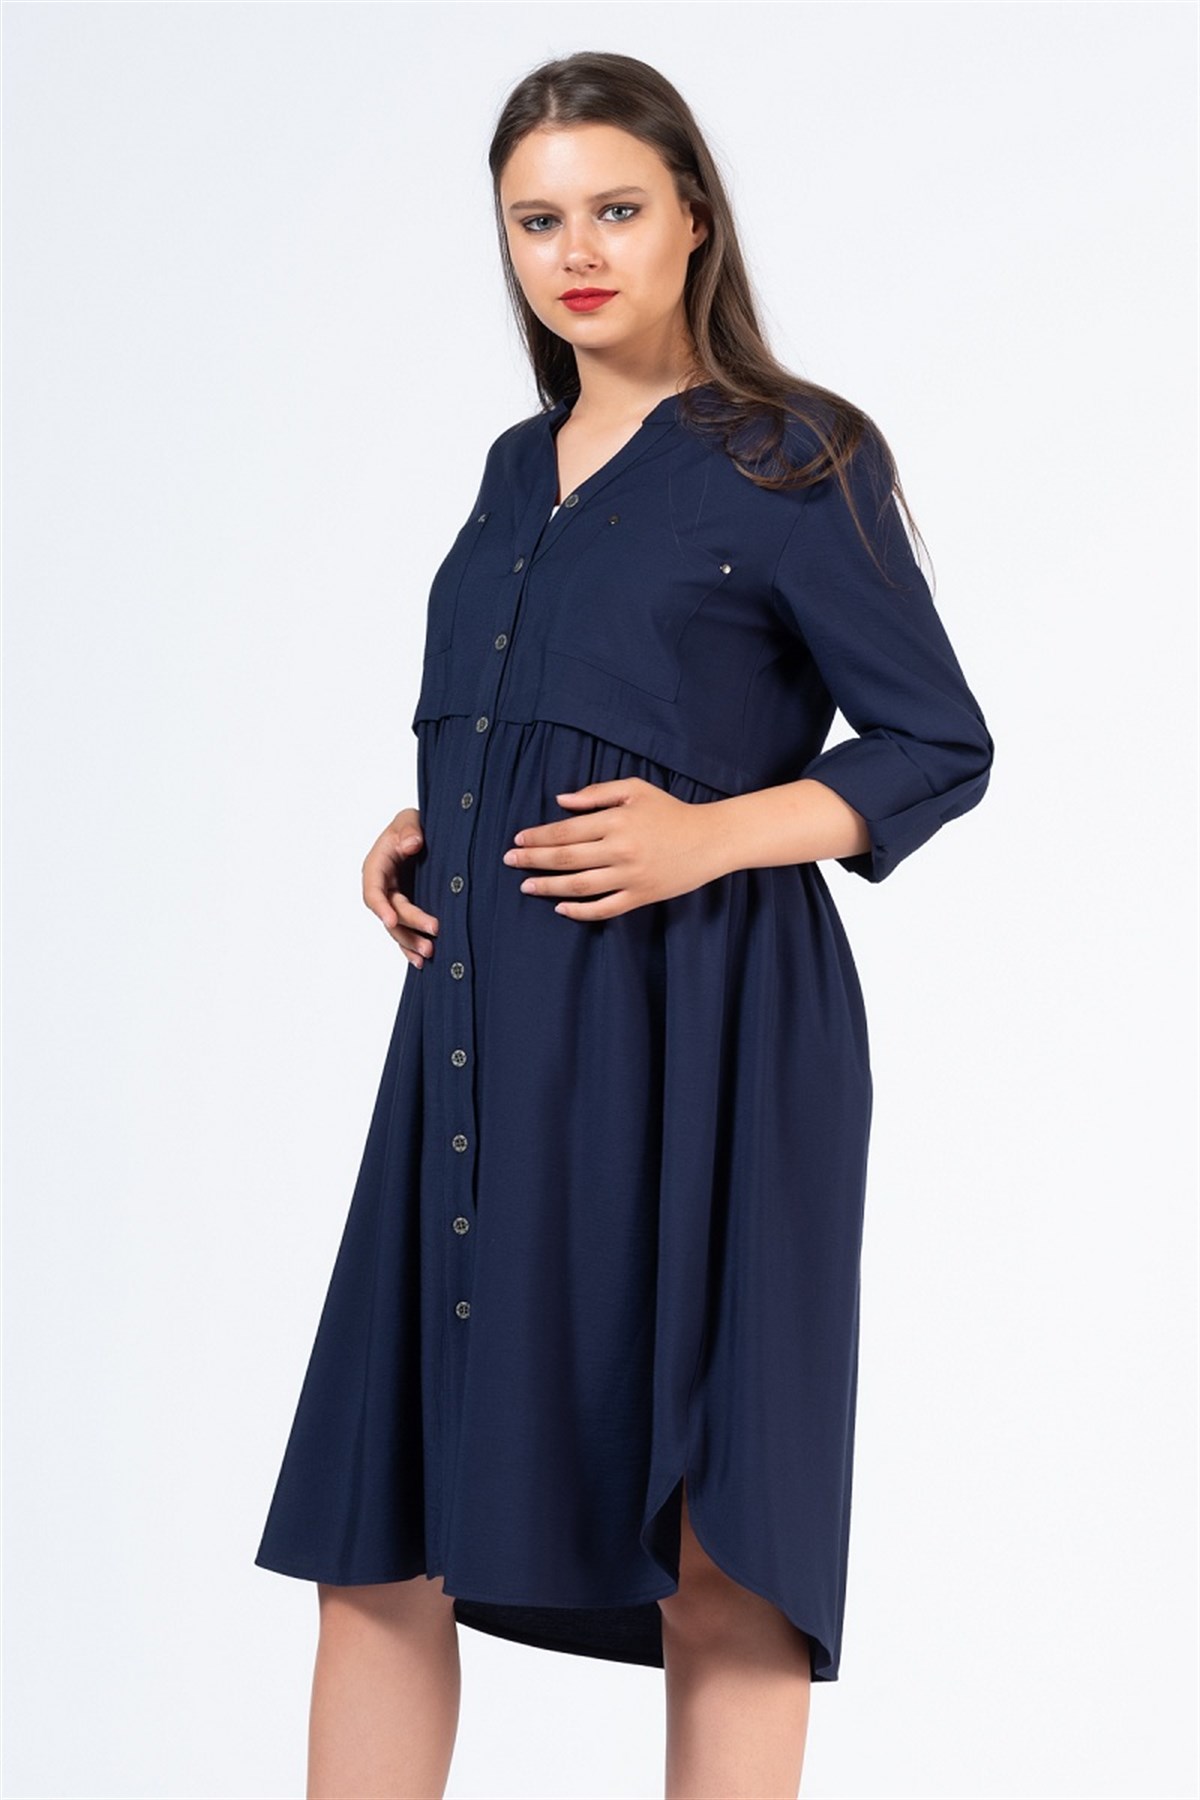 Hamile Günlük Elbise Boydan Düğmeli Lacivert | busagiyim.com